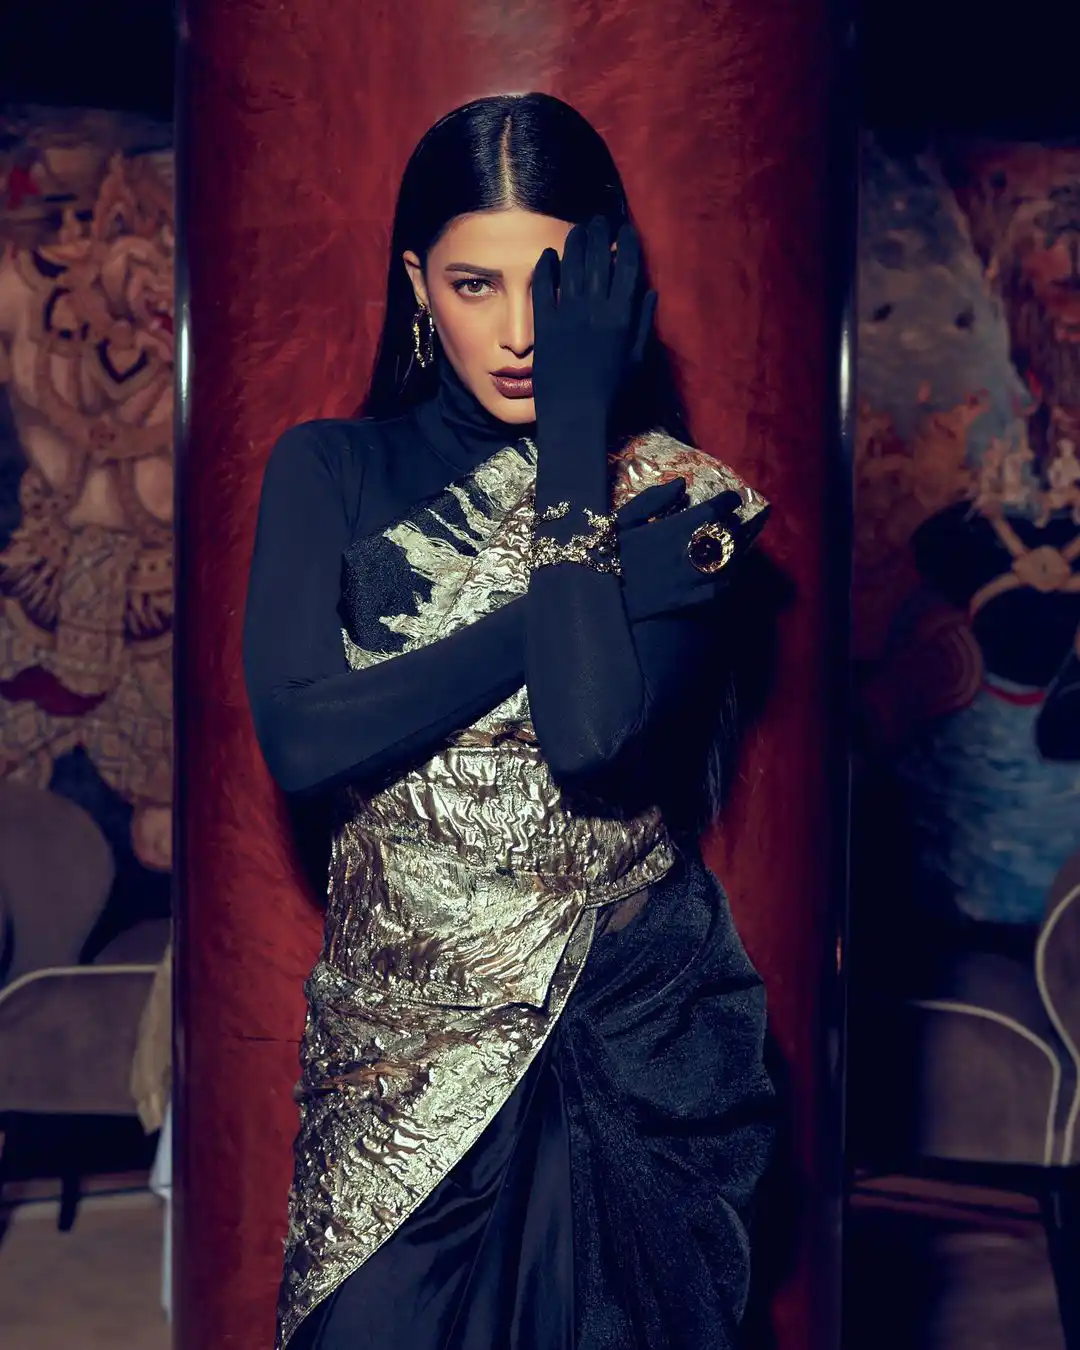 Shruti Haasan poses in stylish saree  